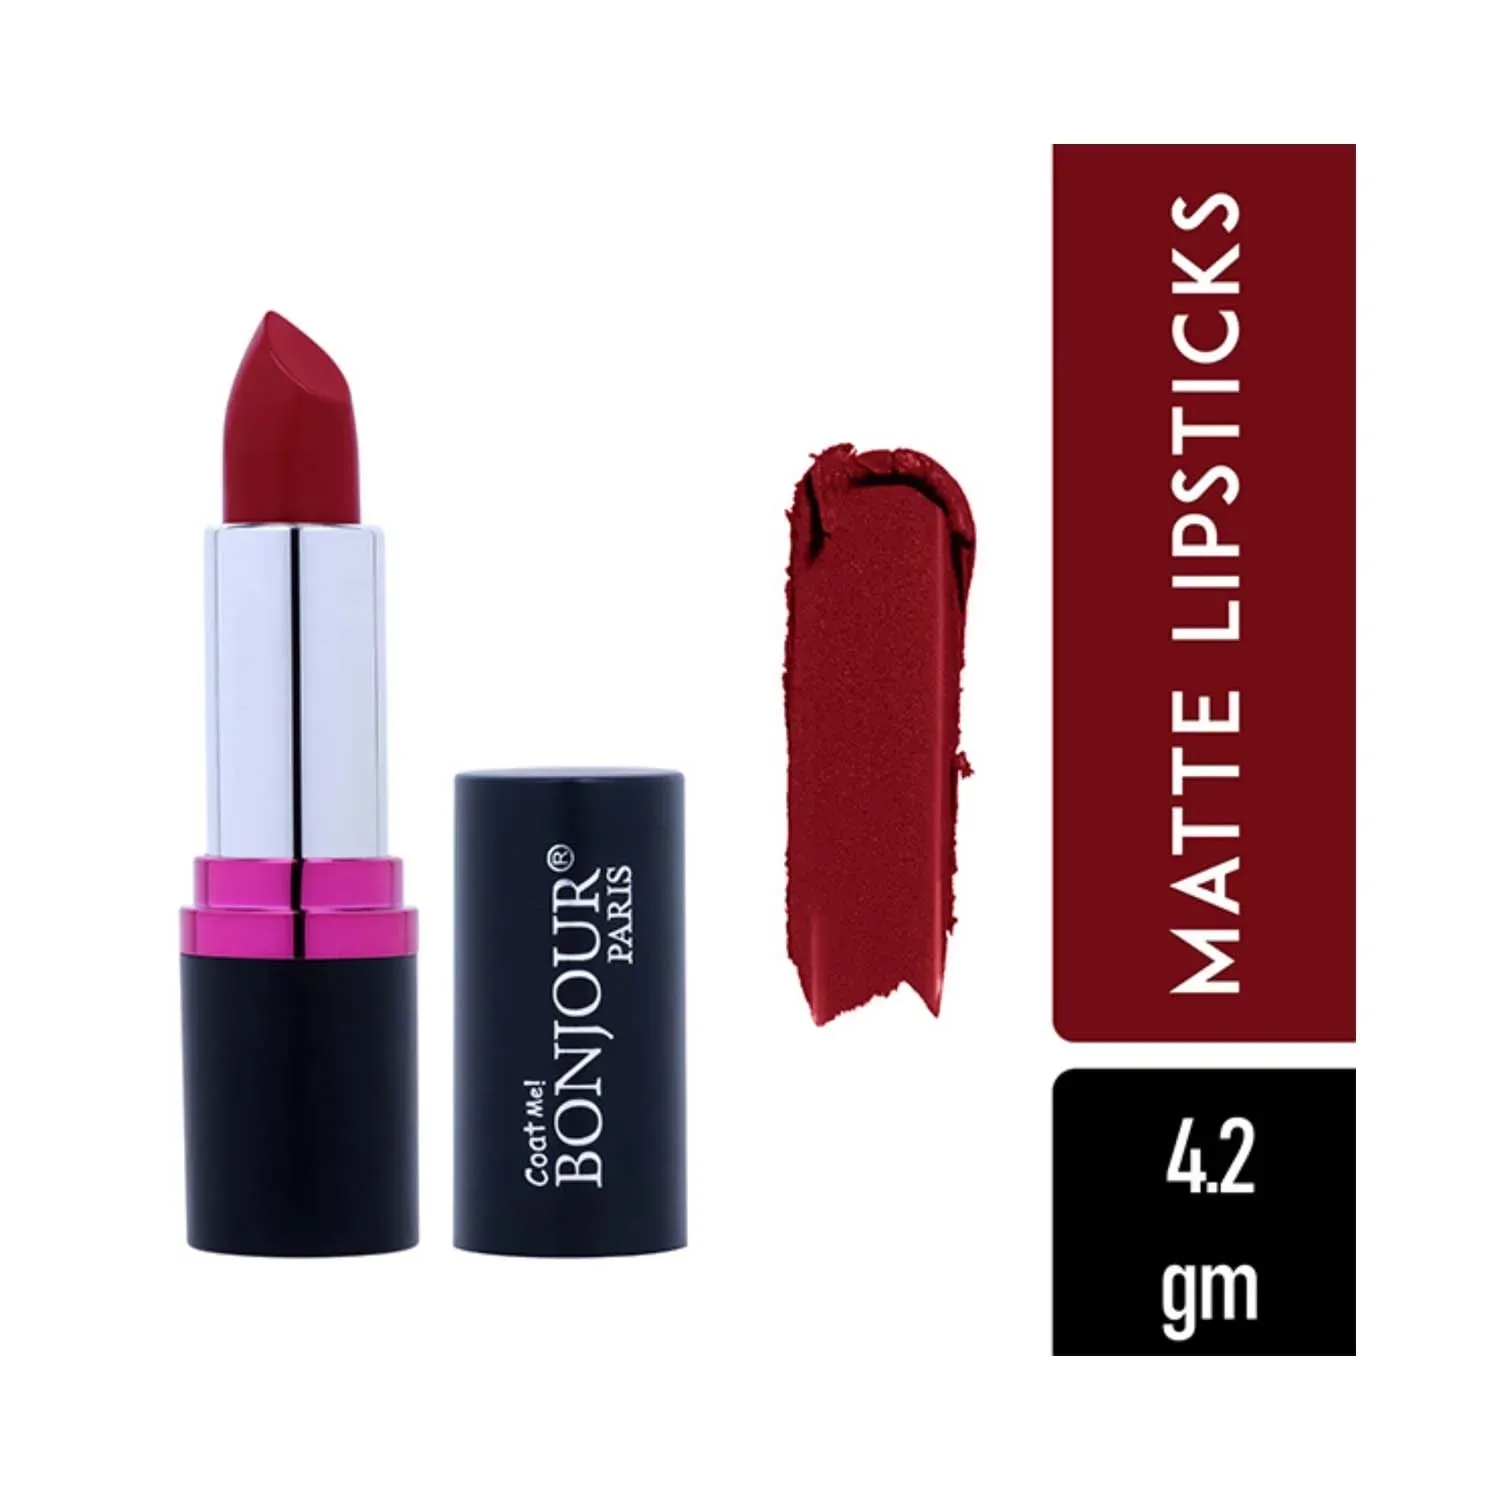 Bonjour Paris | Bonjour Paris Silk Matte Lipstick - Just Red (4.2g)